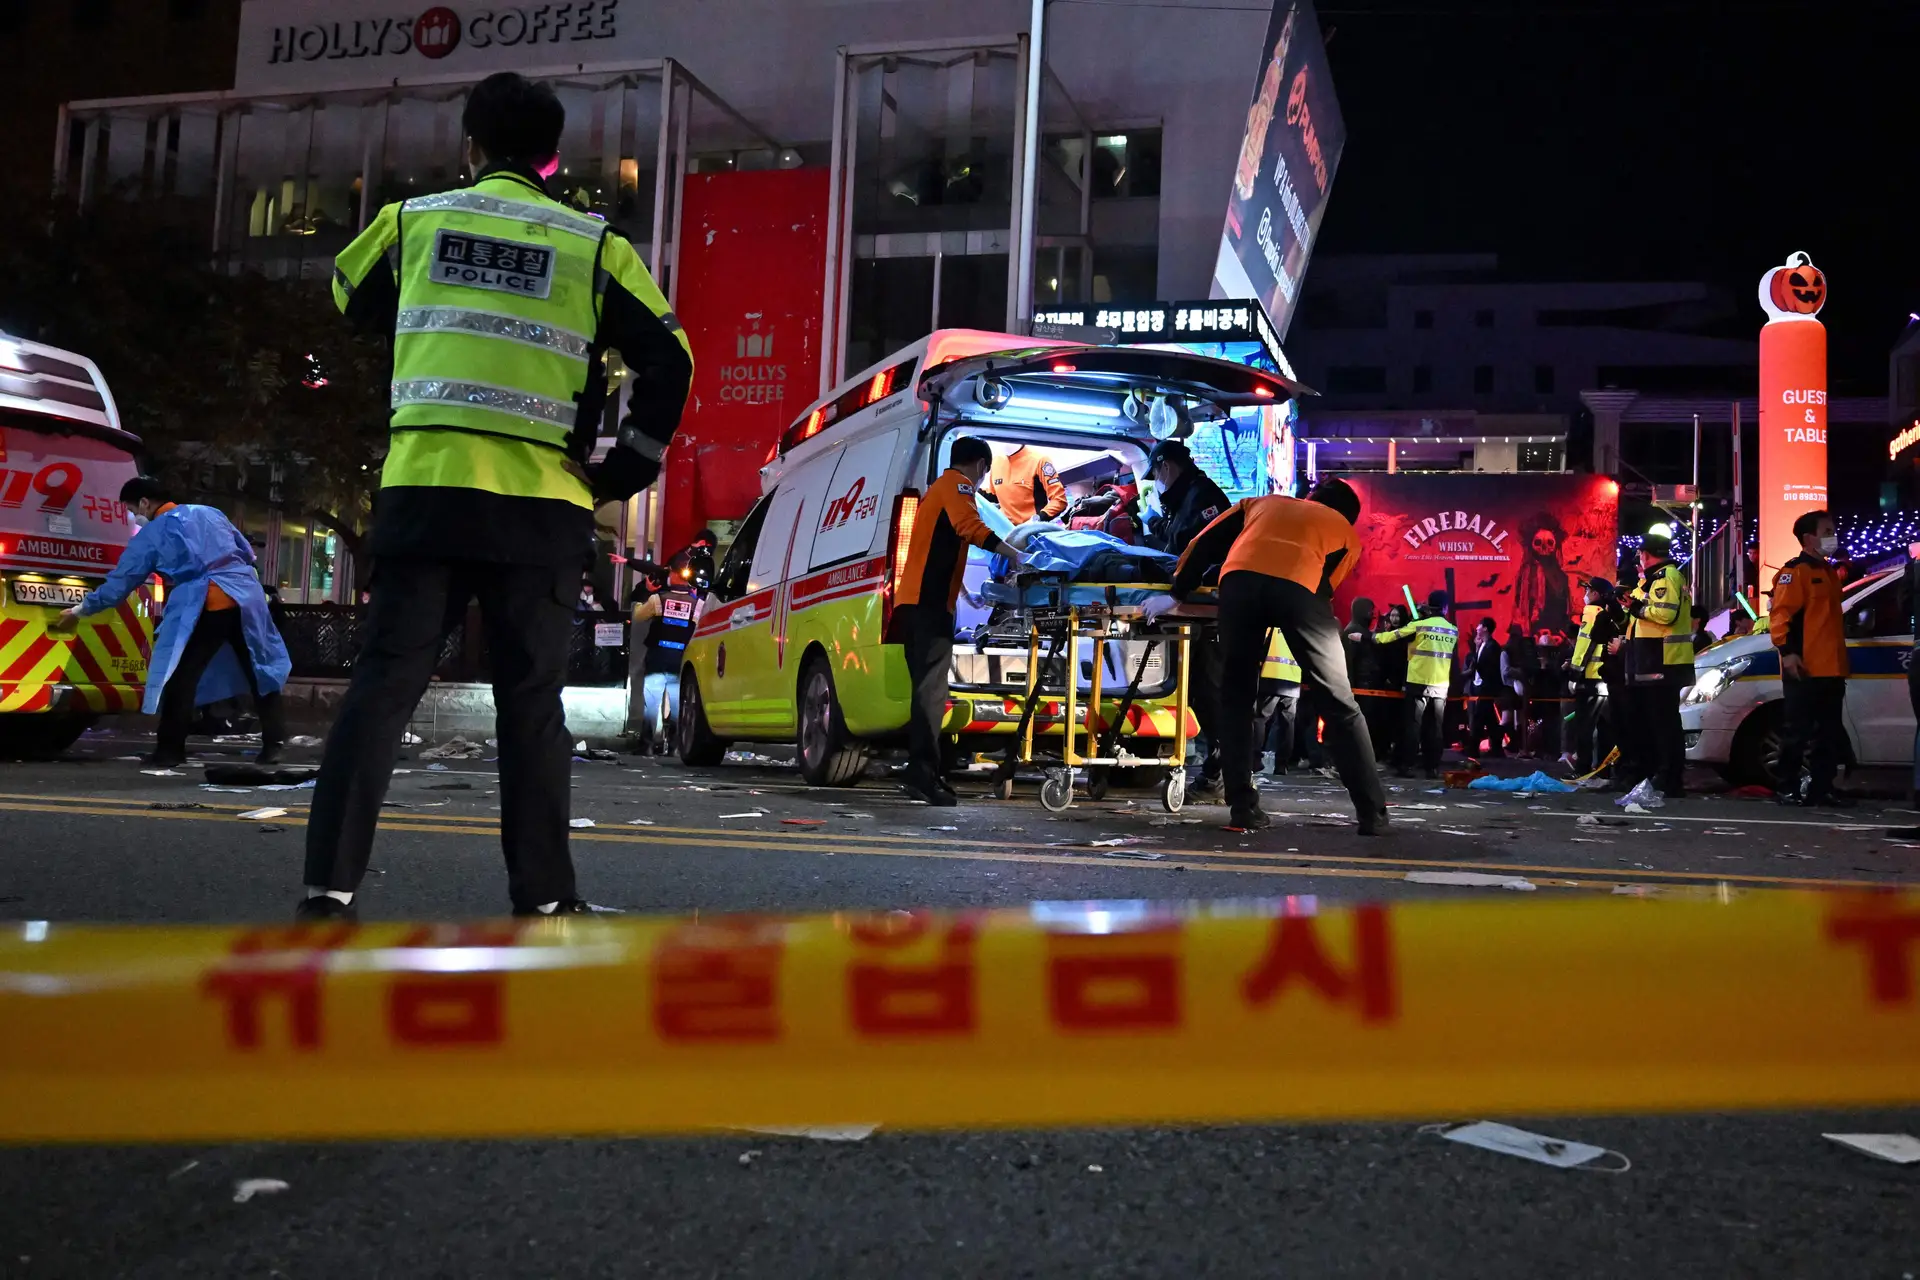 Multidão "esmagada" durante festejos de Halloween na Coreia do Sul